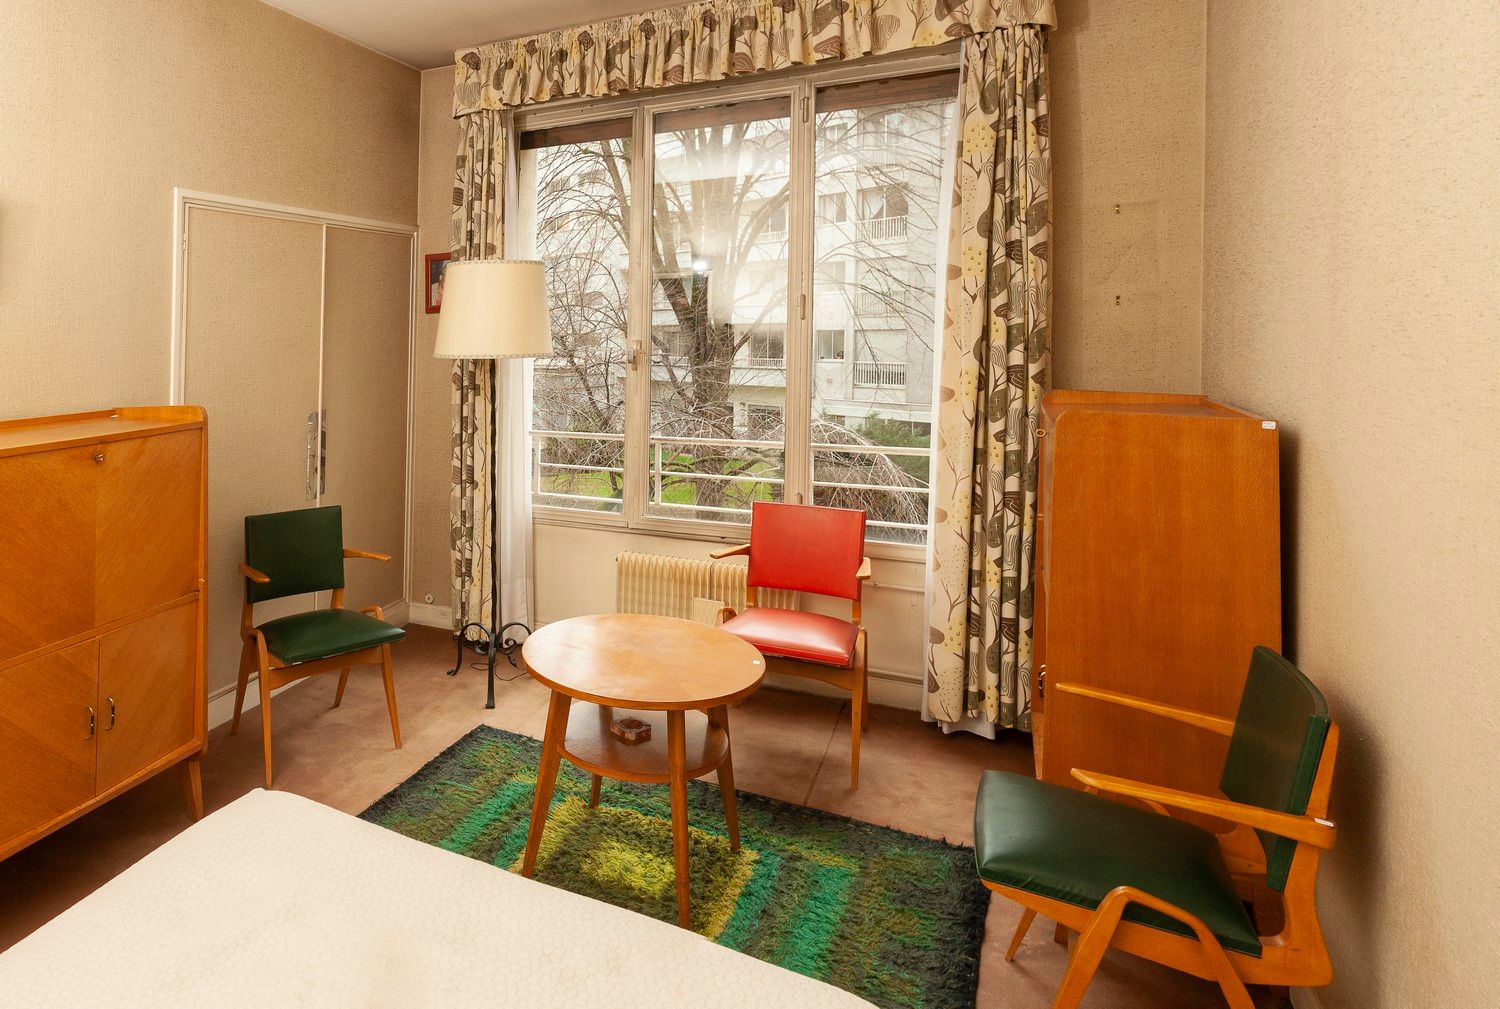 Null 卧室家具包括一个箱子，两个带翻盖的秘书，两个坐在绿色英国skai中的扶手椅，以及一个座桌。它以一盏三脚架的锻铁落地灯完成。

60年代的法国作品